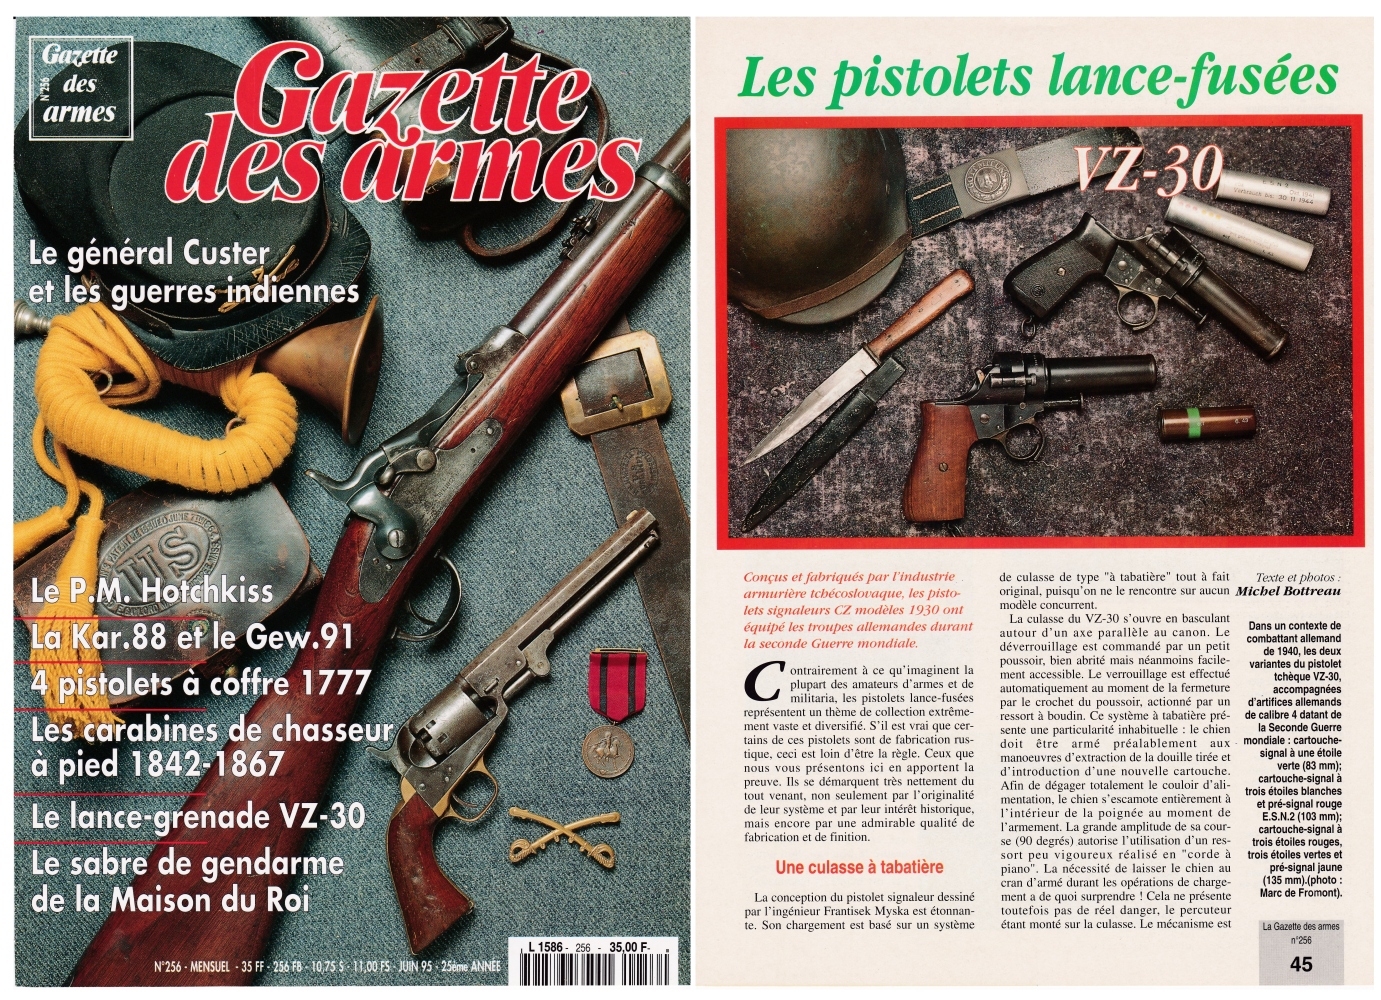 Le pistolet lance-fusées tchèque VZ-30 a fait l'objet d'une publication sur 4 pages dans le magazine Gazette des Armes n°256 (juin 1995).